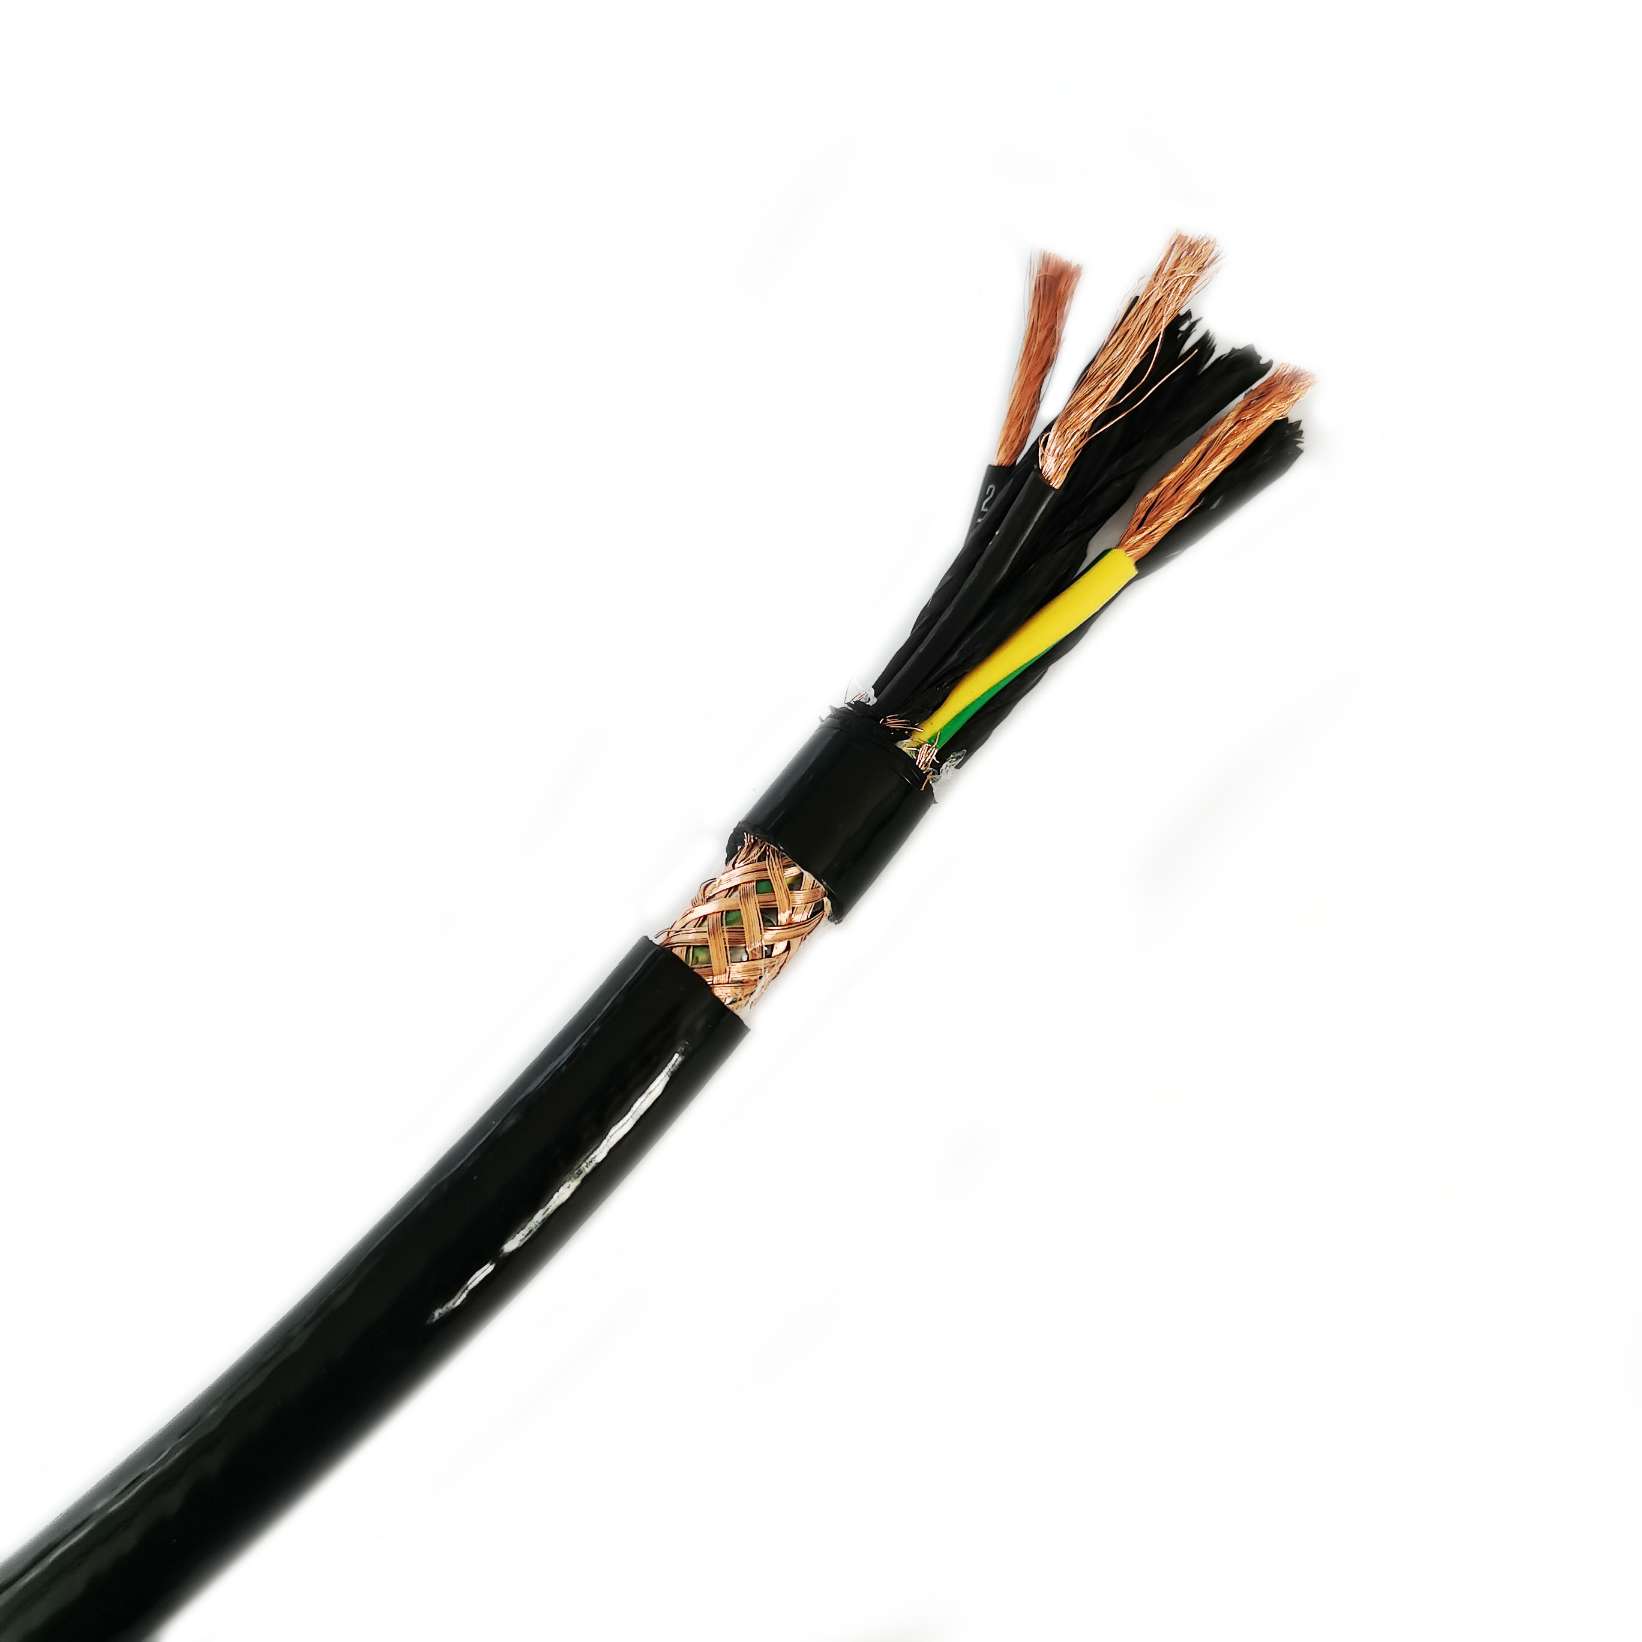 Welche Faktoren sollten bei der Auswahl eines PUR-Kabels für eine bestimmte Anwendung beachtet werden?